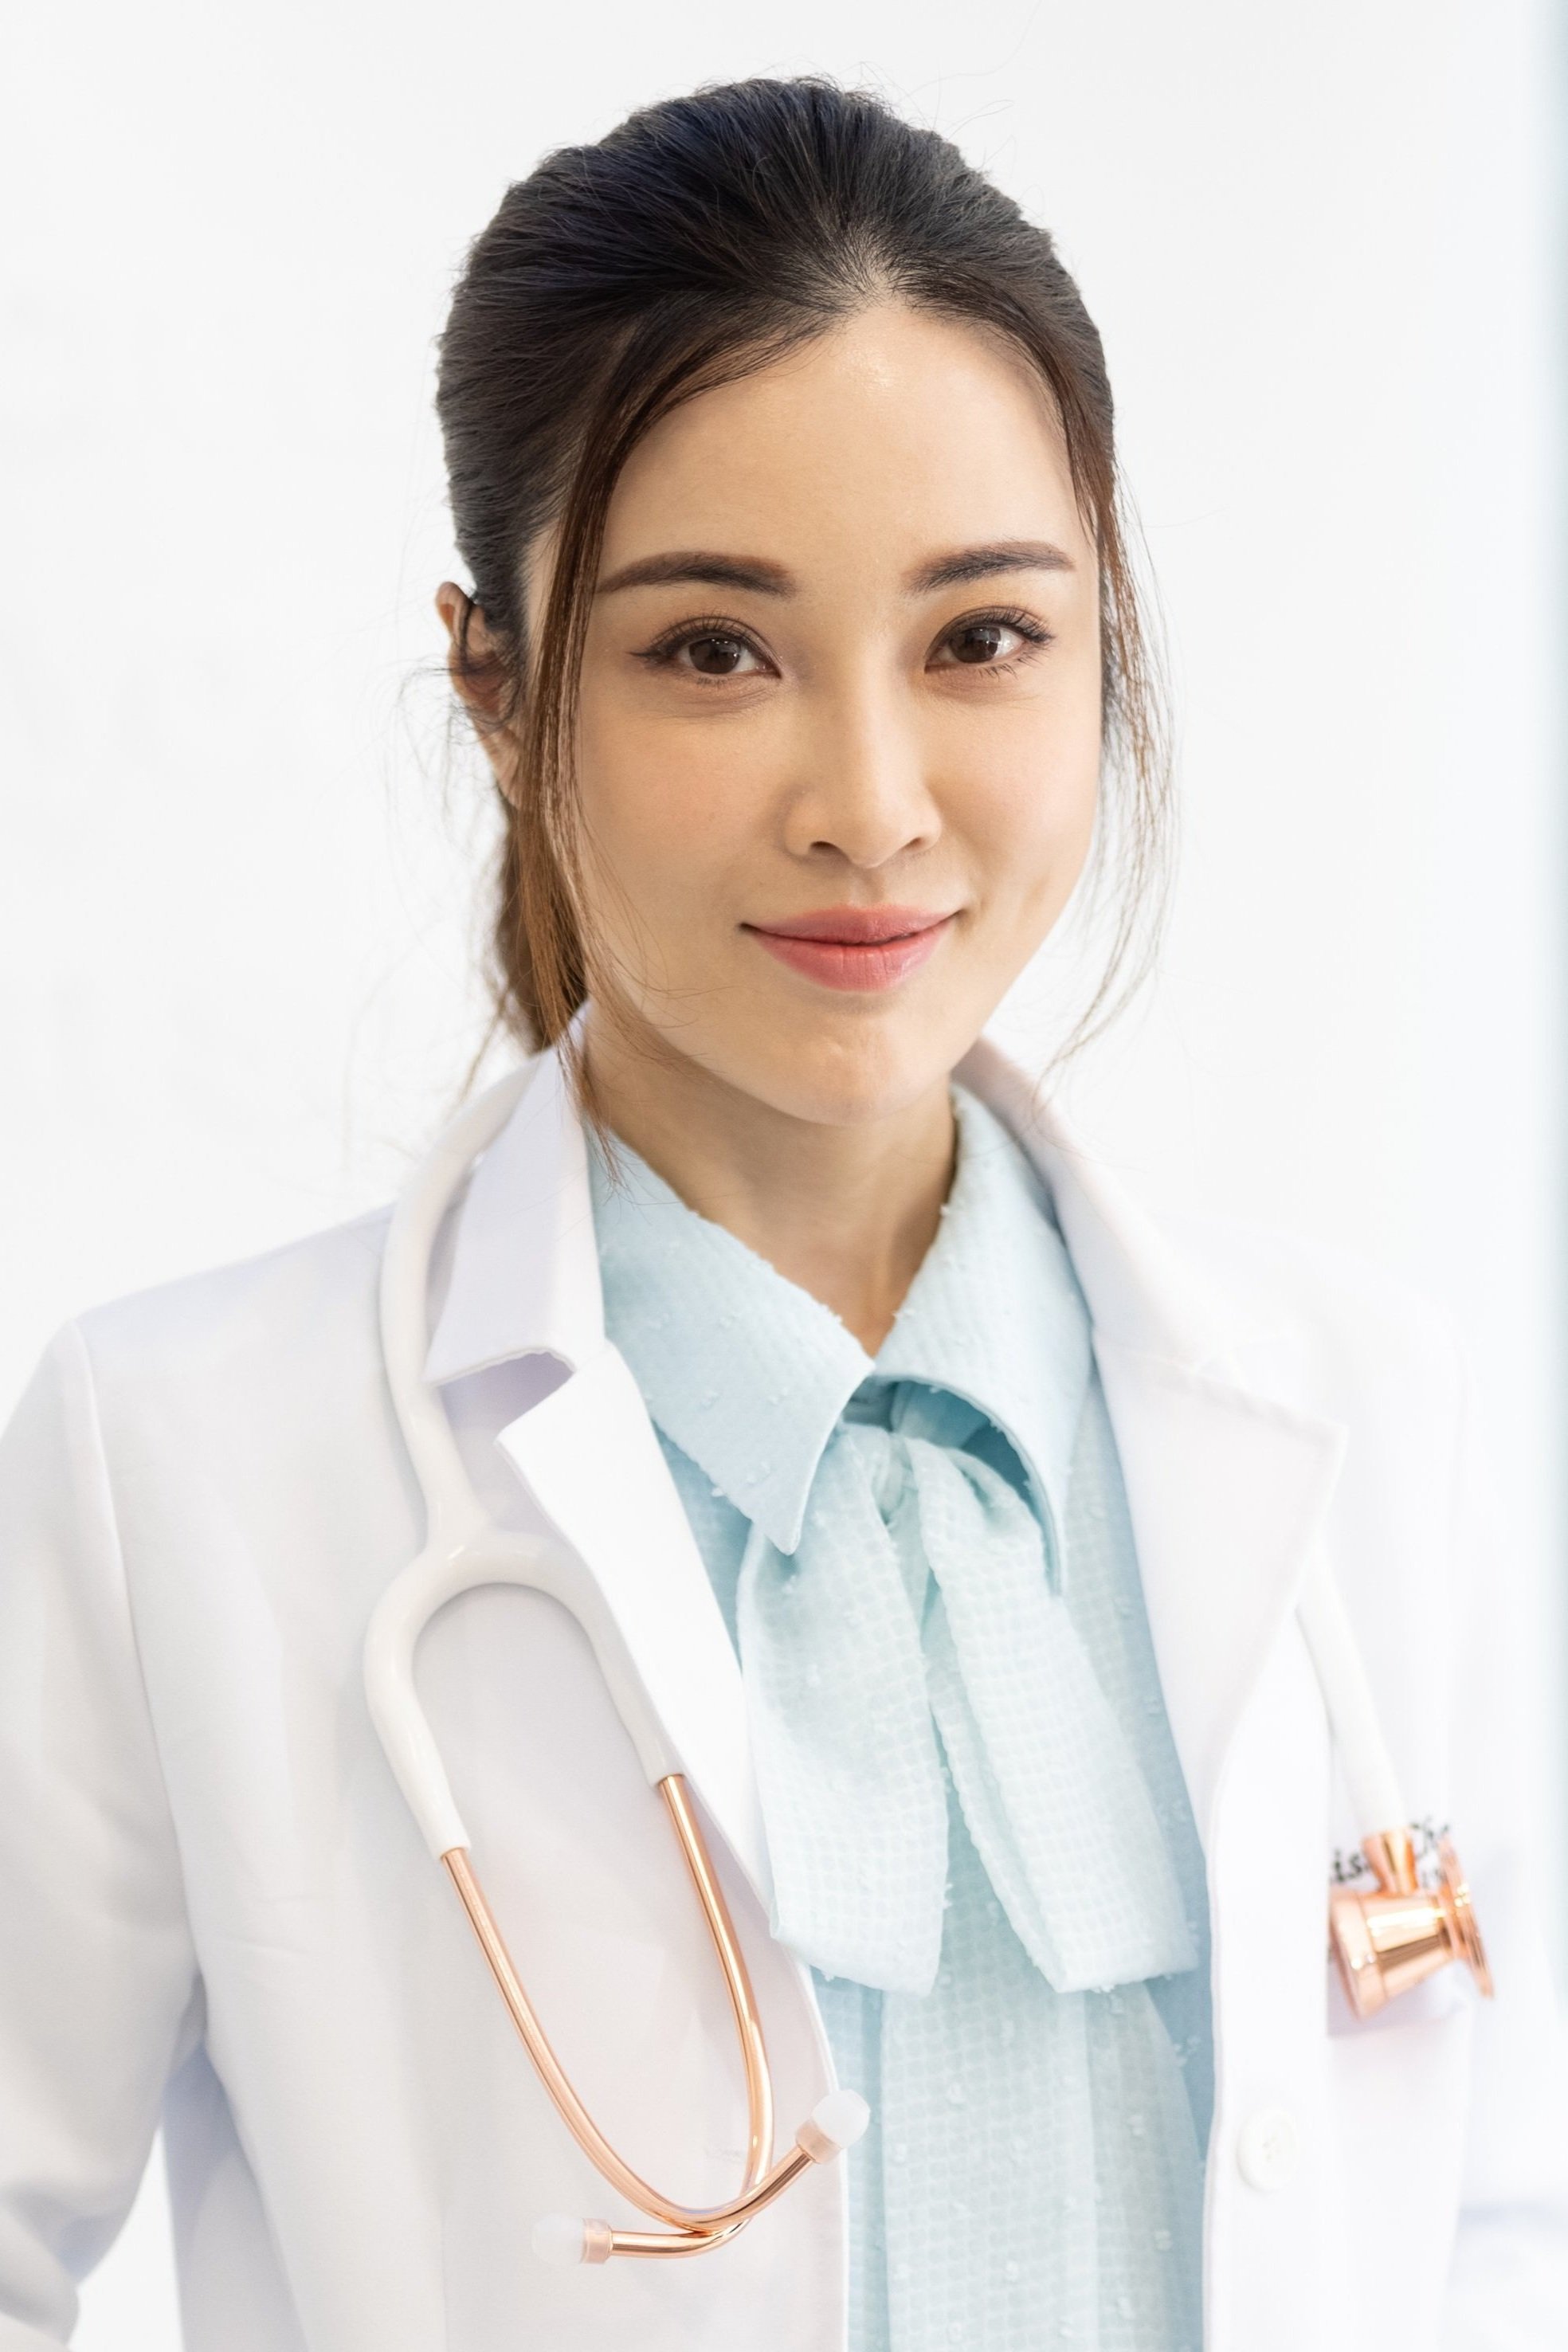 Dr Lisa KW Chan